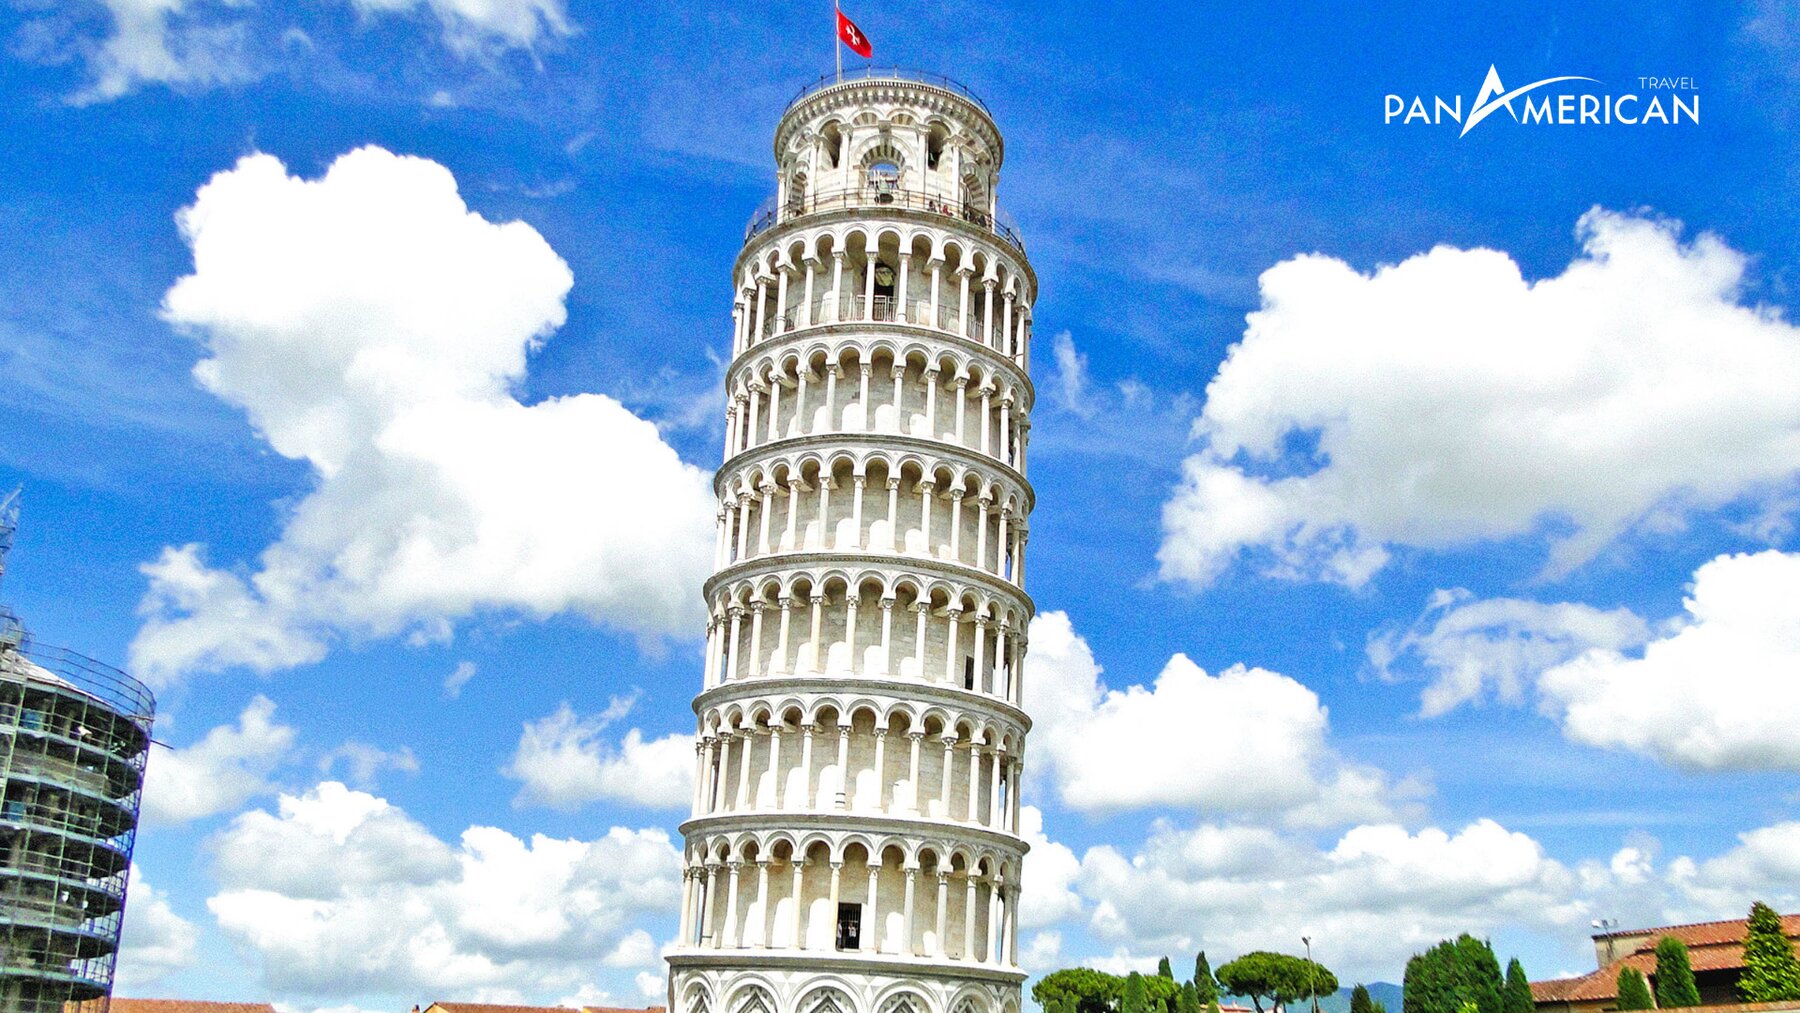 Tháp nghiêng Pisa và sự thật về góc nghiêng 3,97 độ - Gallery Image